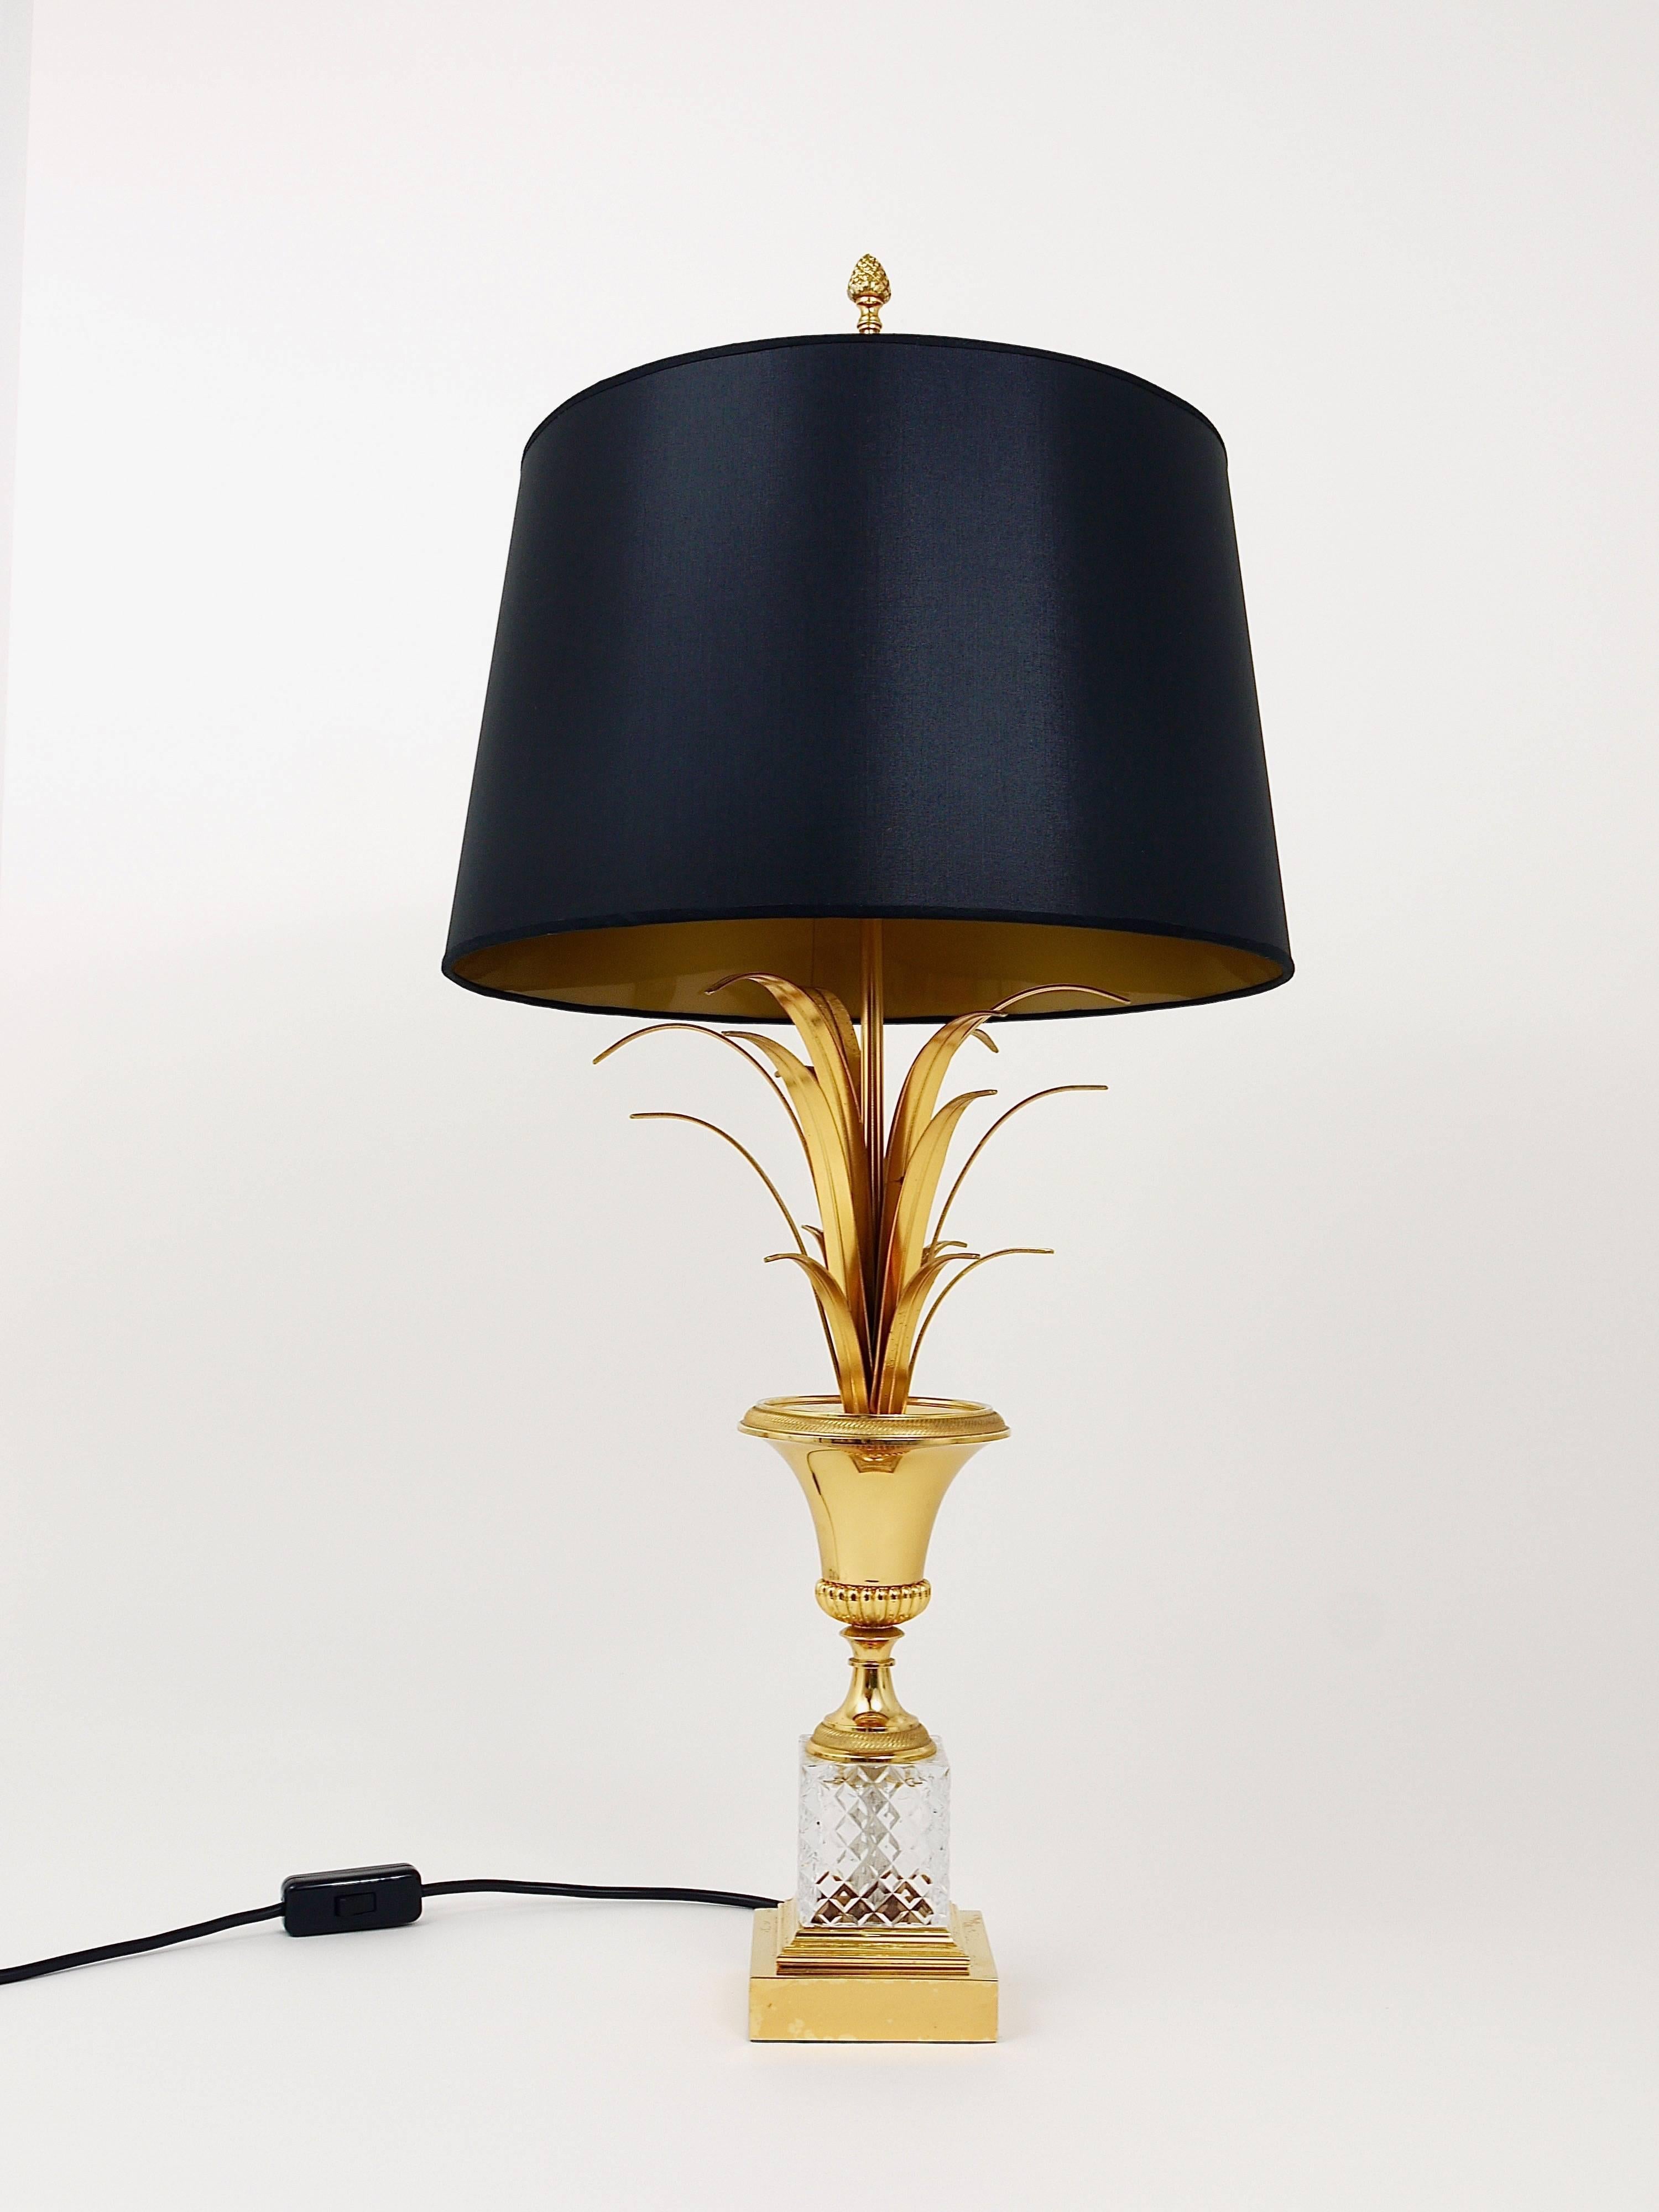 Magnifique lampe de table à feuilles d'ananas de style Régence hollywoodienne plaquée or, dans le style de la Maison Charles, datant des années 1970. En laiton doré et verre de cristal, avec un abat-jour noir à l'intérieur doré. En très bon état